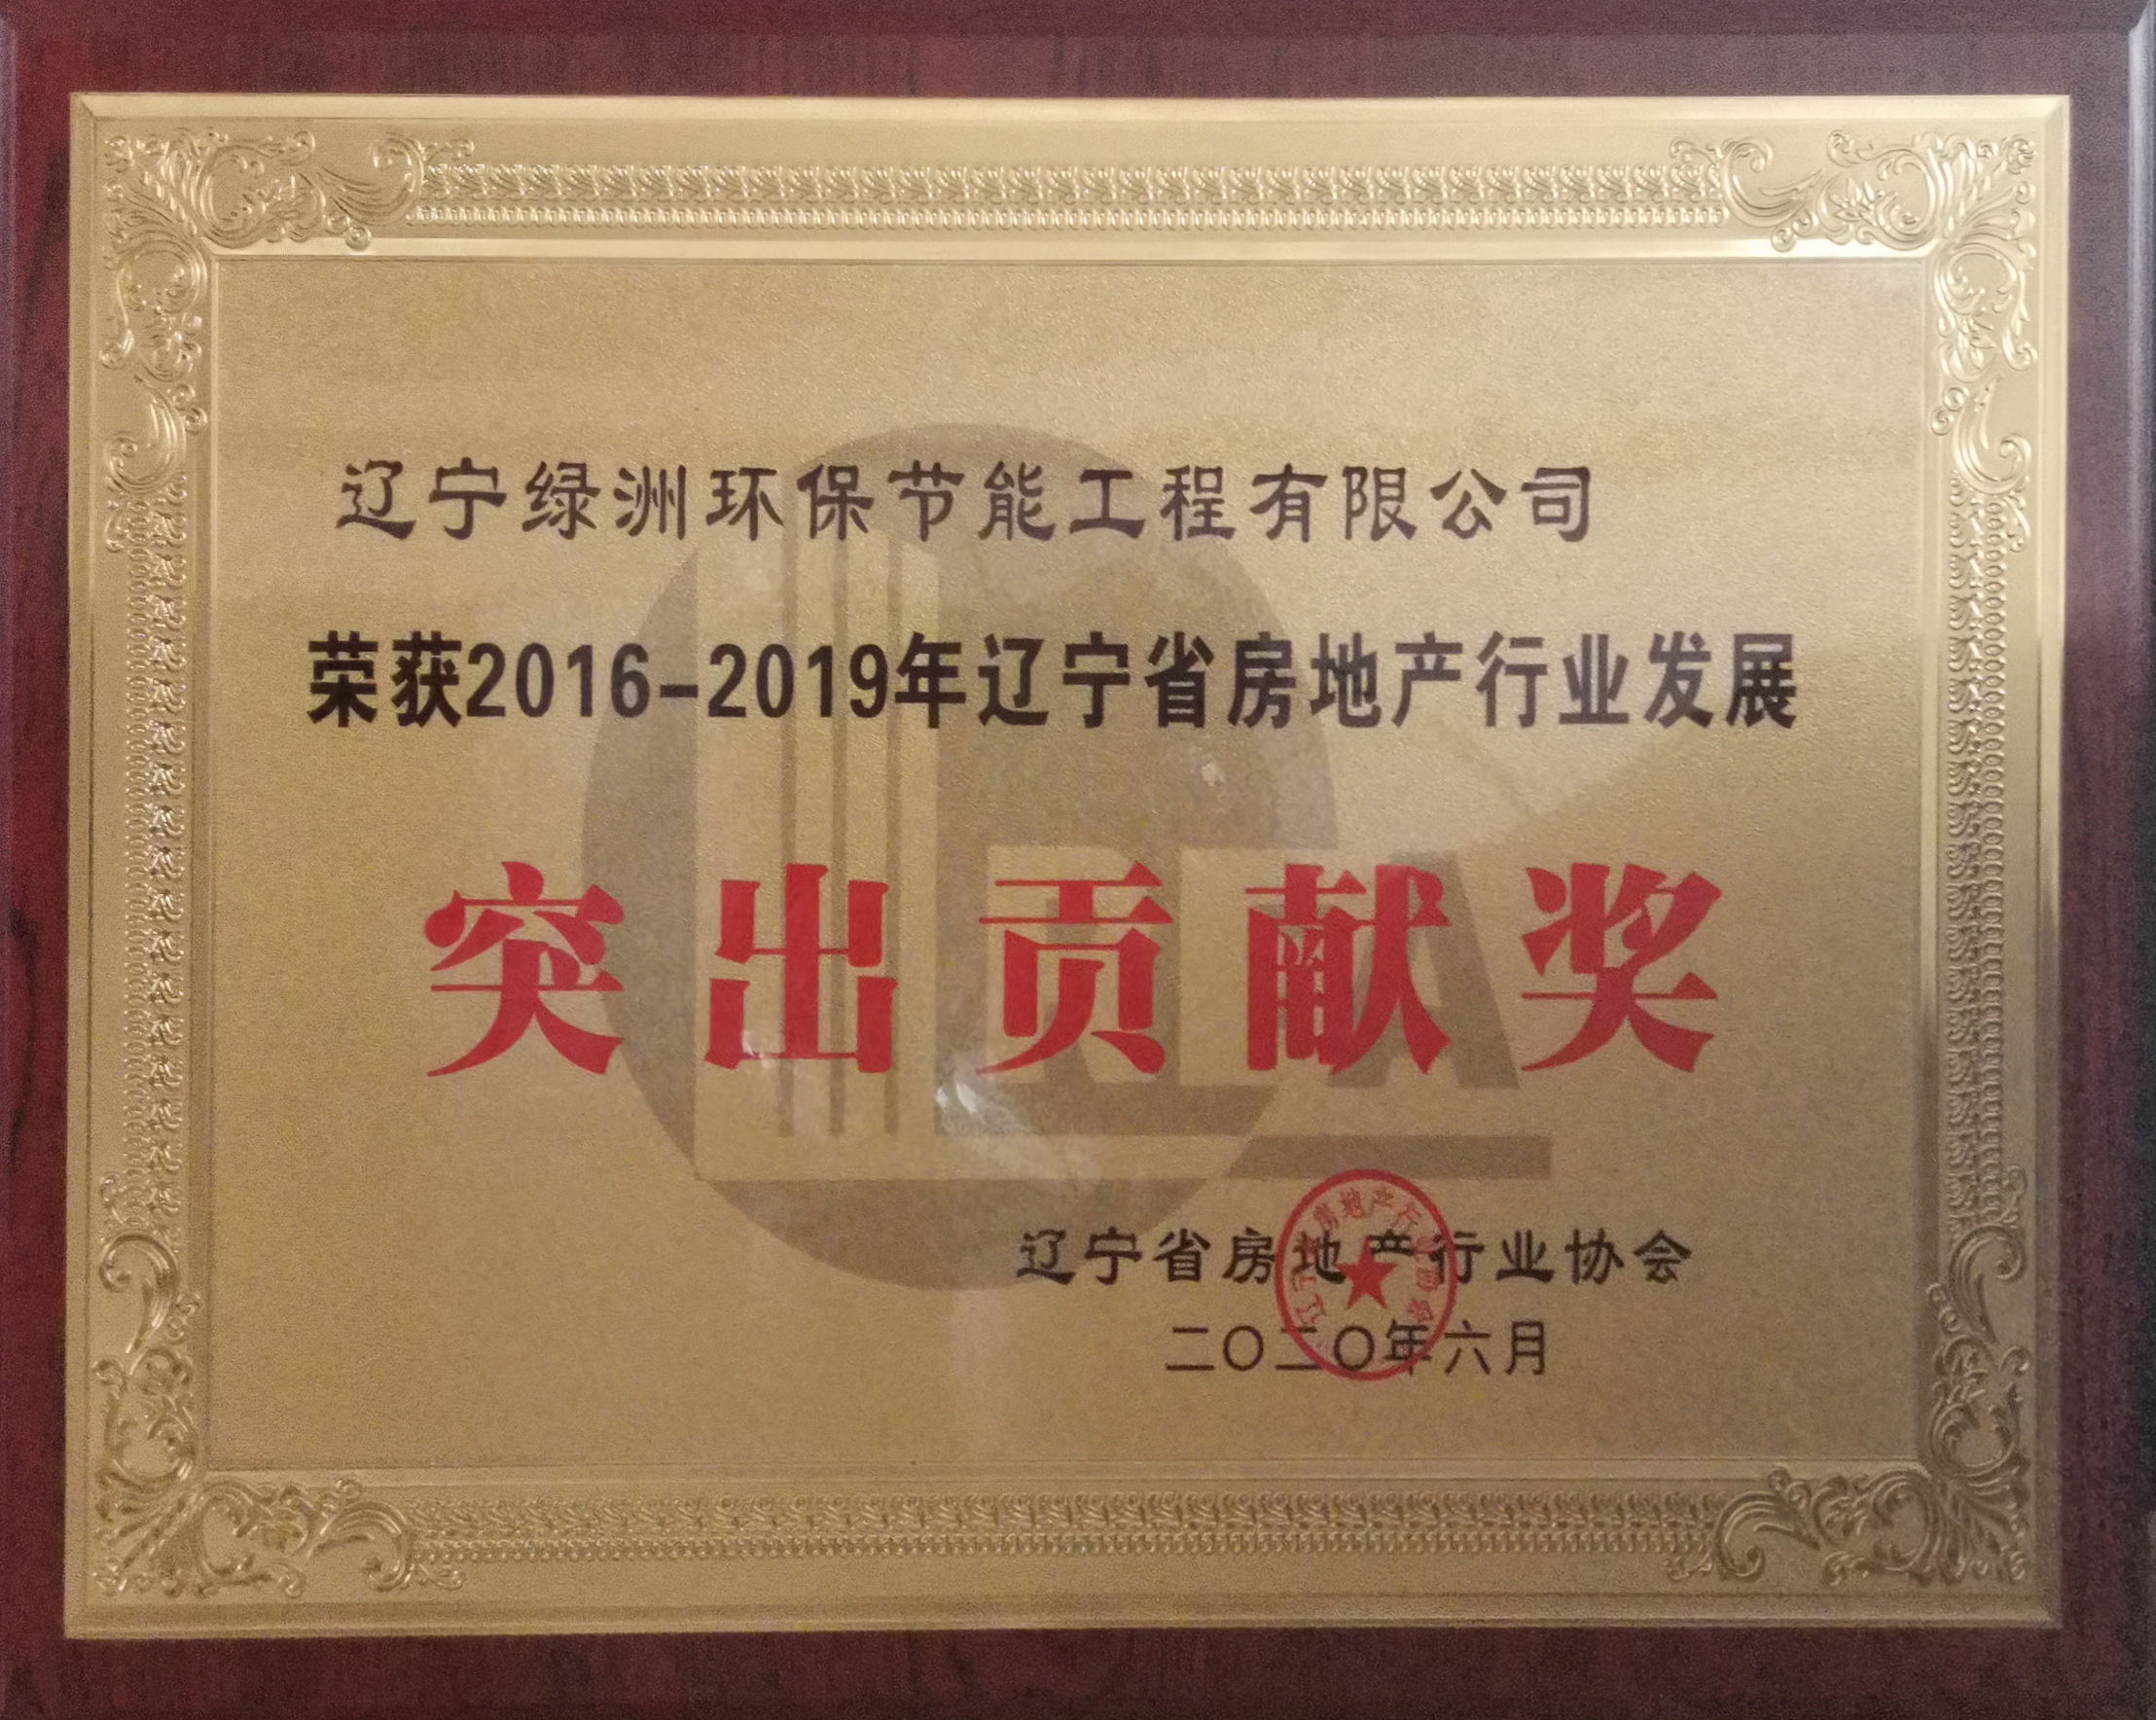 綠洲企業榮獲2016-2019年遼寧省房地產行業發展突出貢獻獎